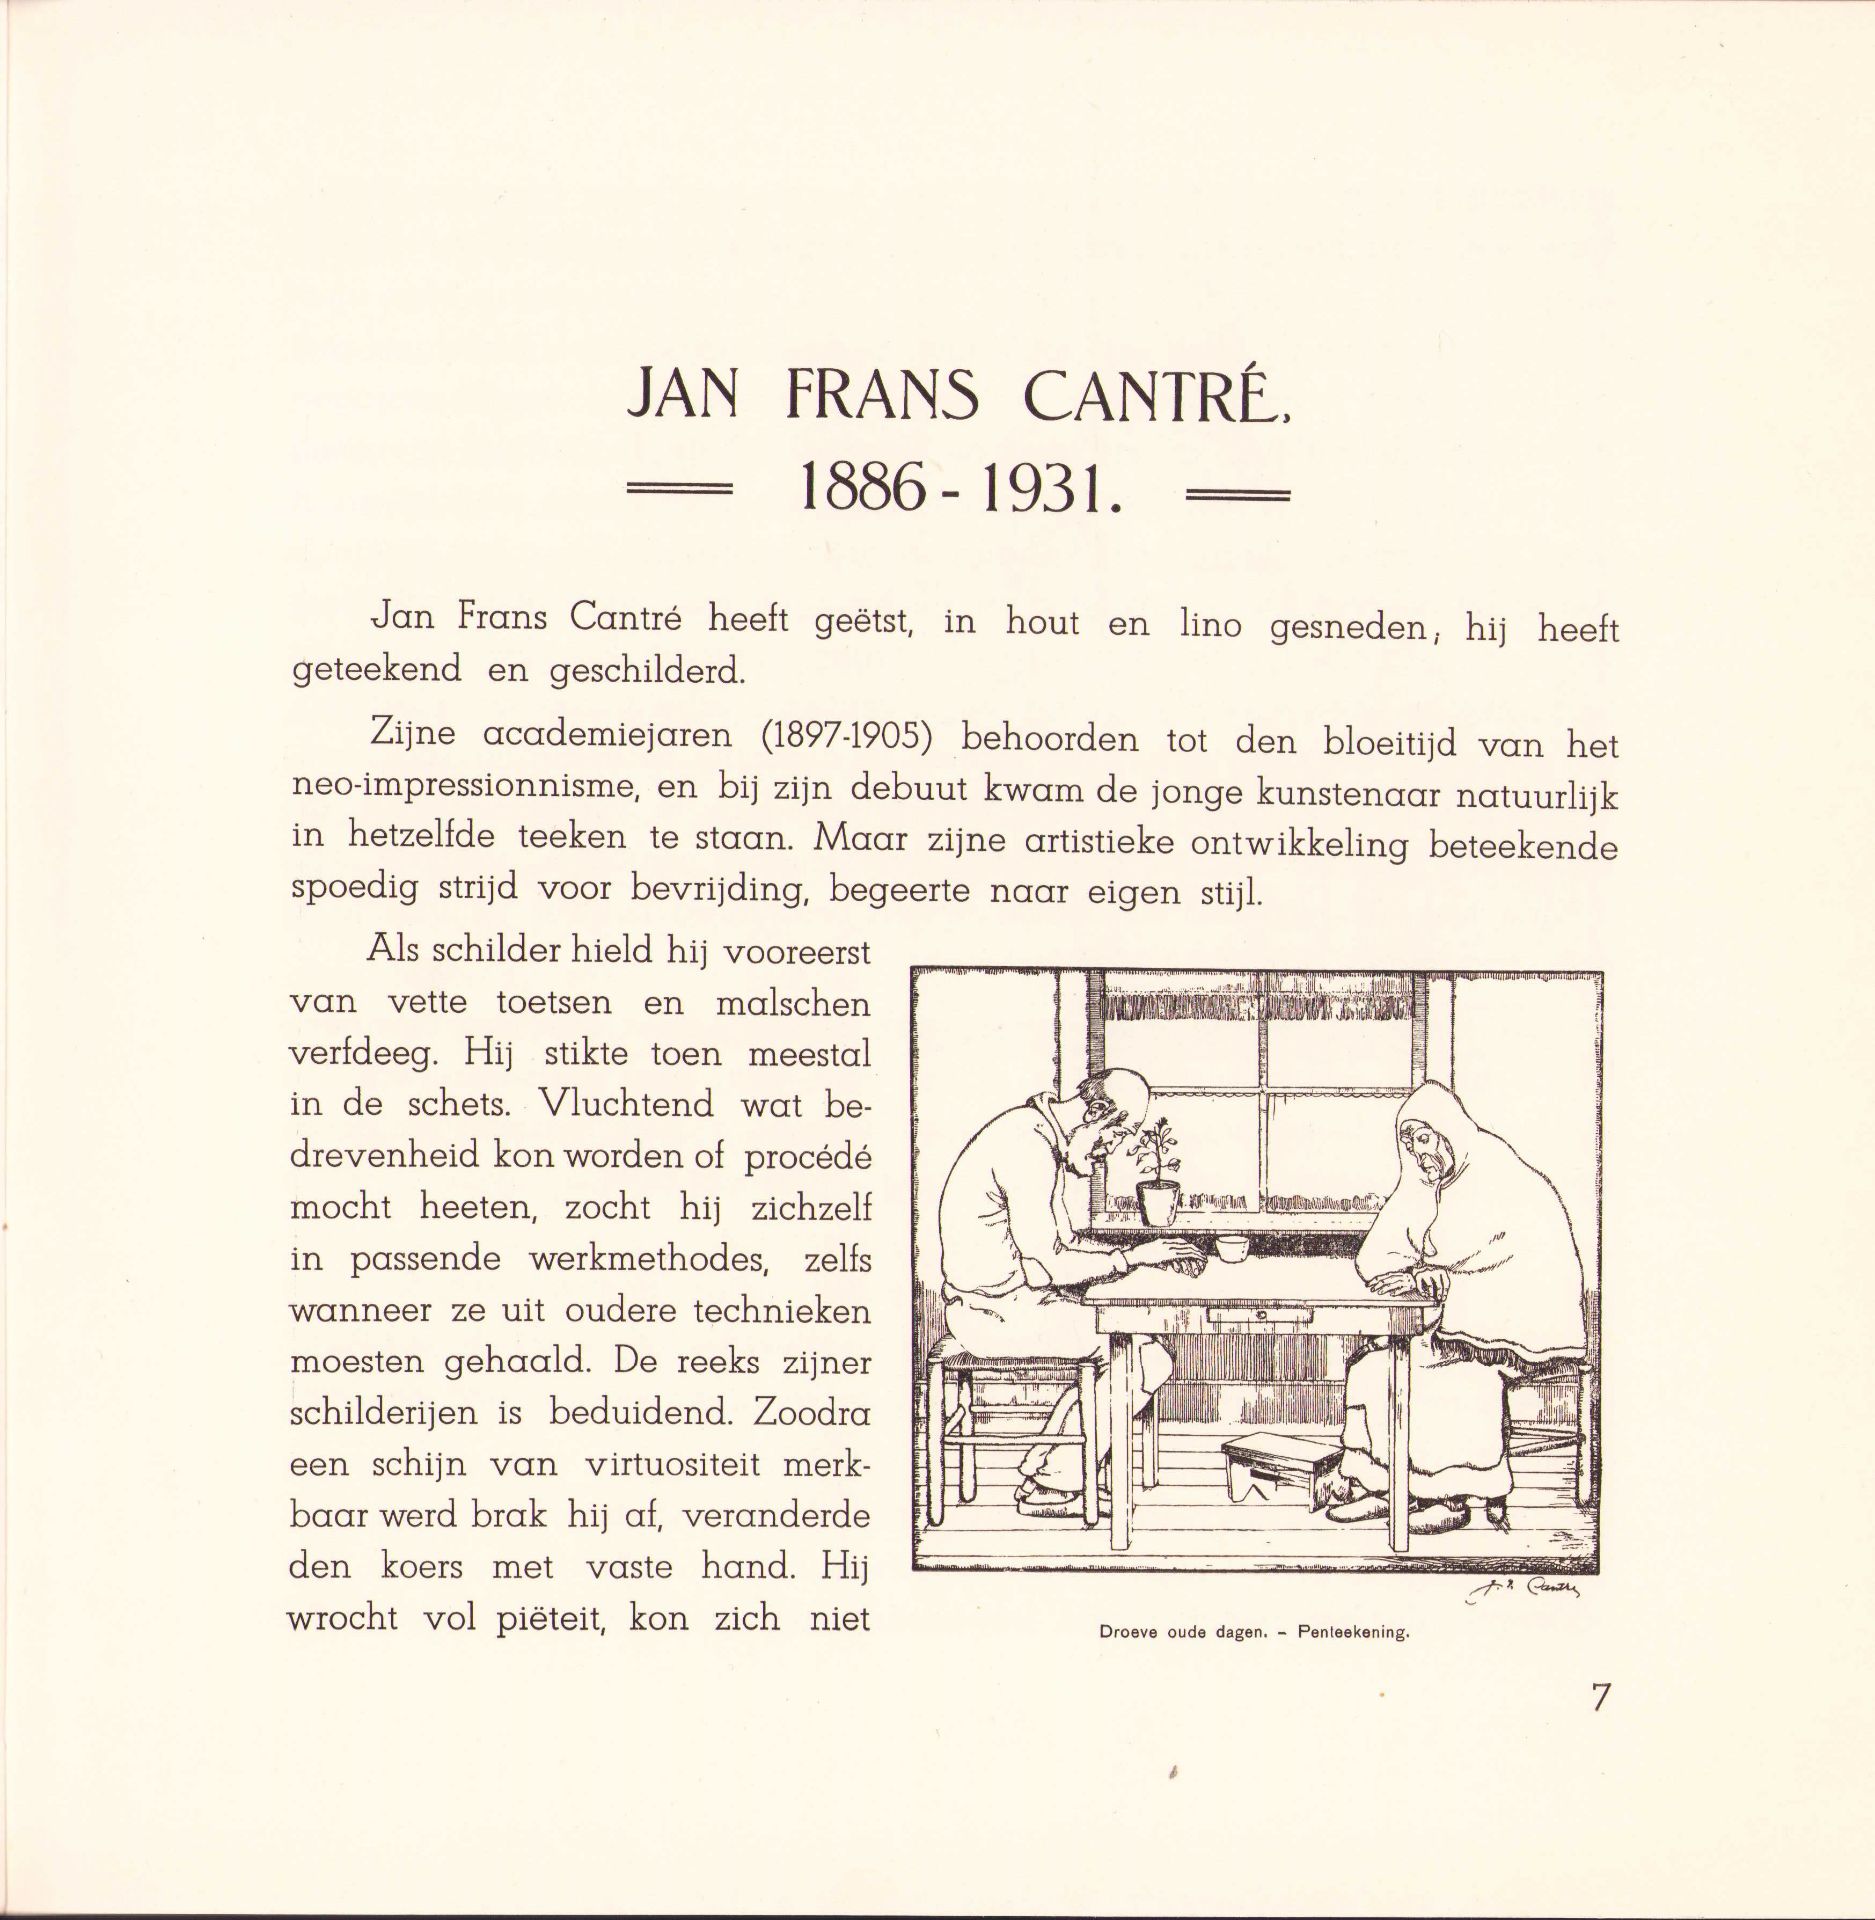 |Art| "Jan Frans Cantré Xylograaf", 193. Uitgave van de Koninklijke Academie van Schoone Kunsten, - Image 3 of 9